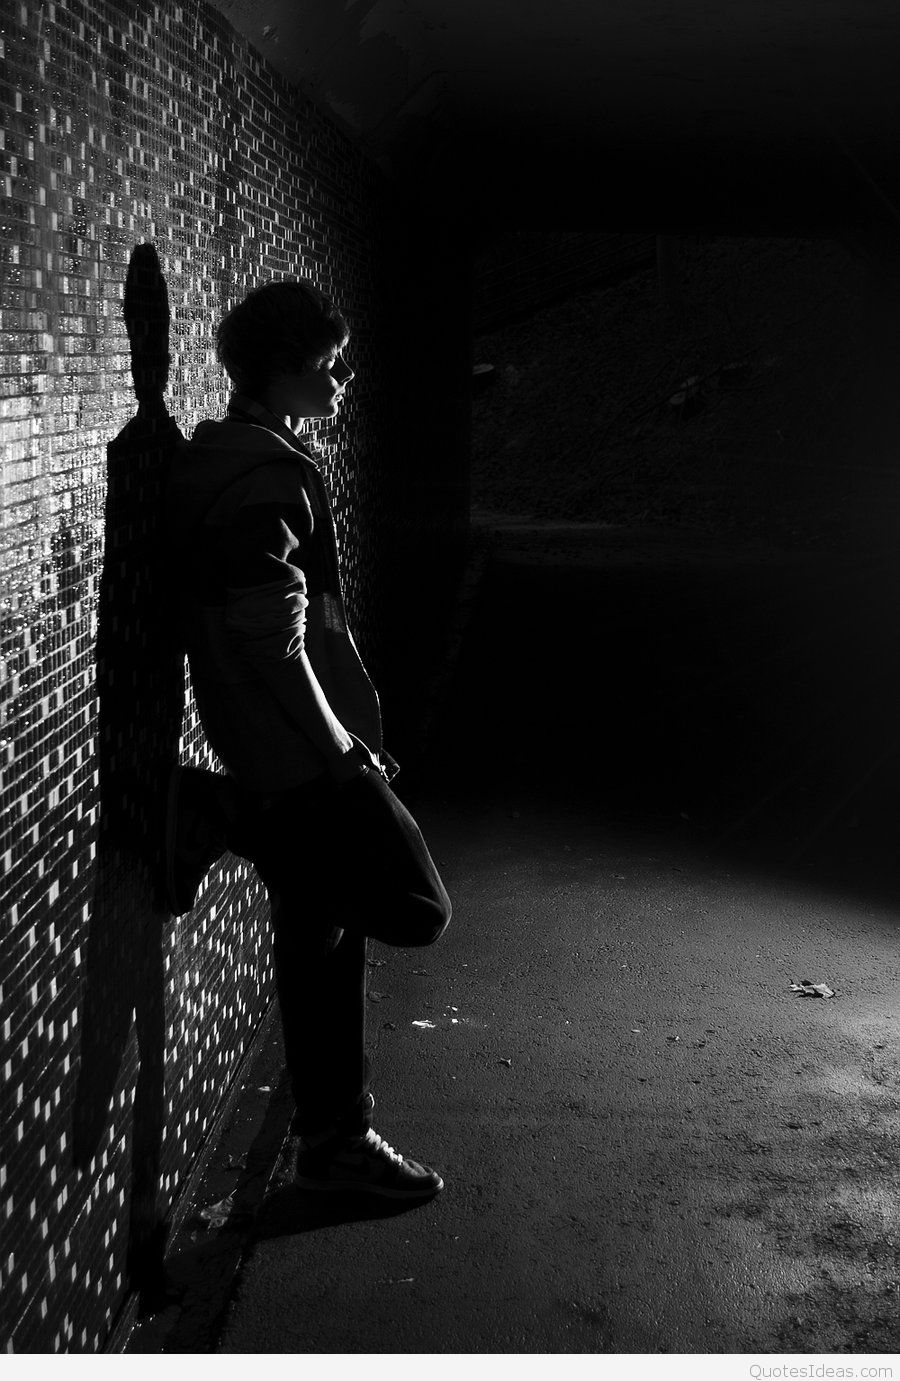 혼자 소년의 hd 벽지,사진,검정,검정색과 흰색,어둠,흑백 사진